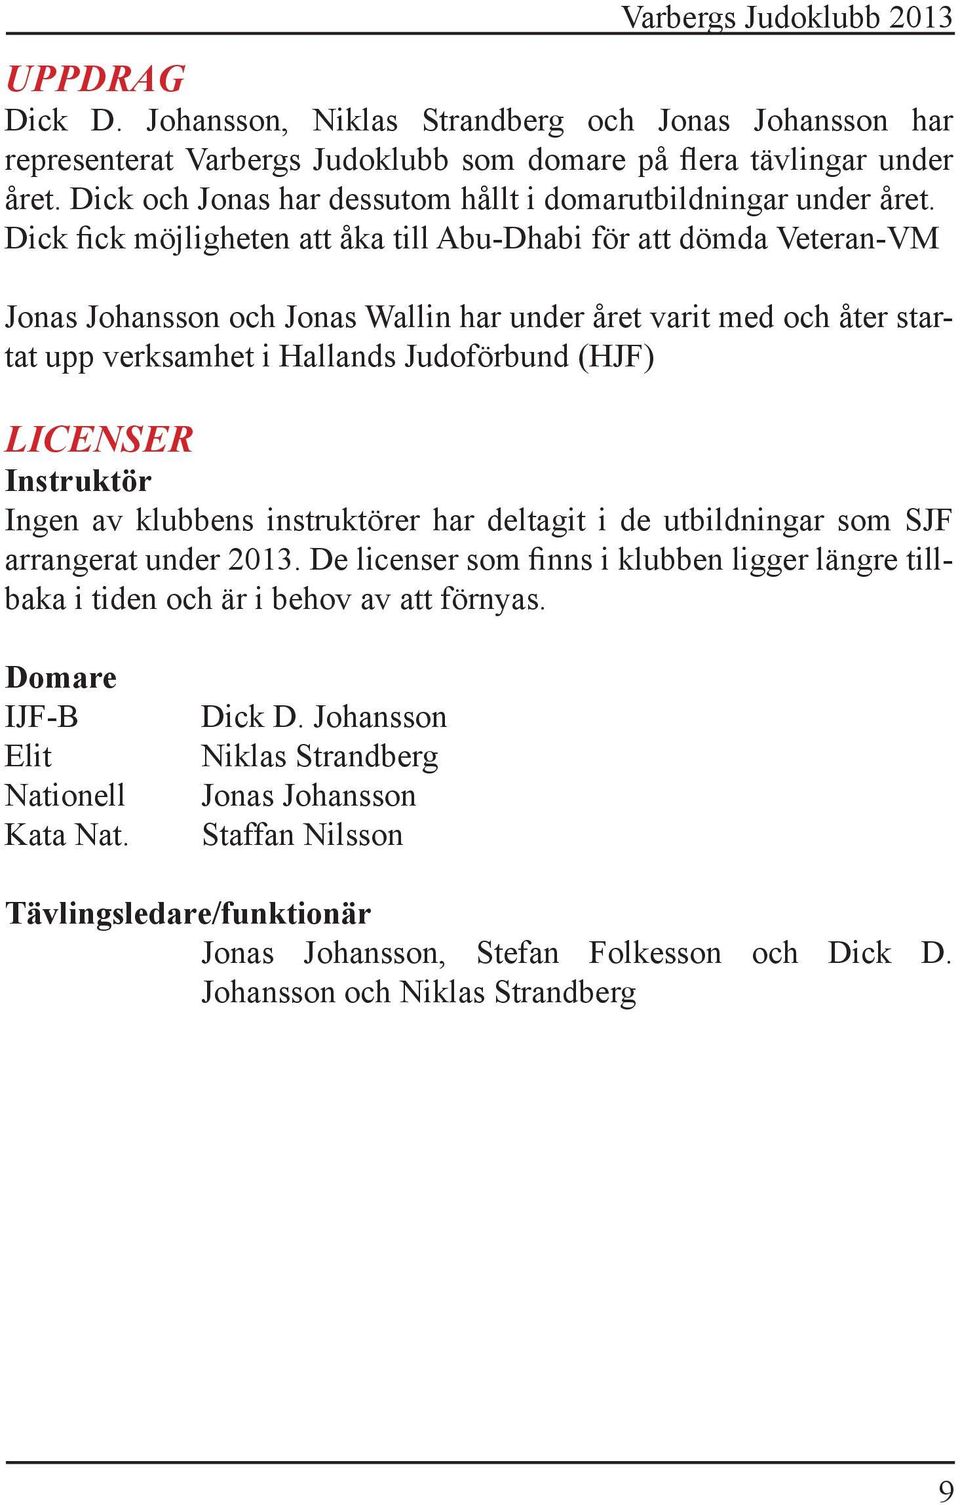 Dick fick möjligheten att åka till Abu-Dhabi för att dömda Veteran-VM Jonas Johansson och Jonas Wallin har under året varit med och åter startat upp verksamhet i Hallands Judoförbund (HJF) LICENSER